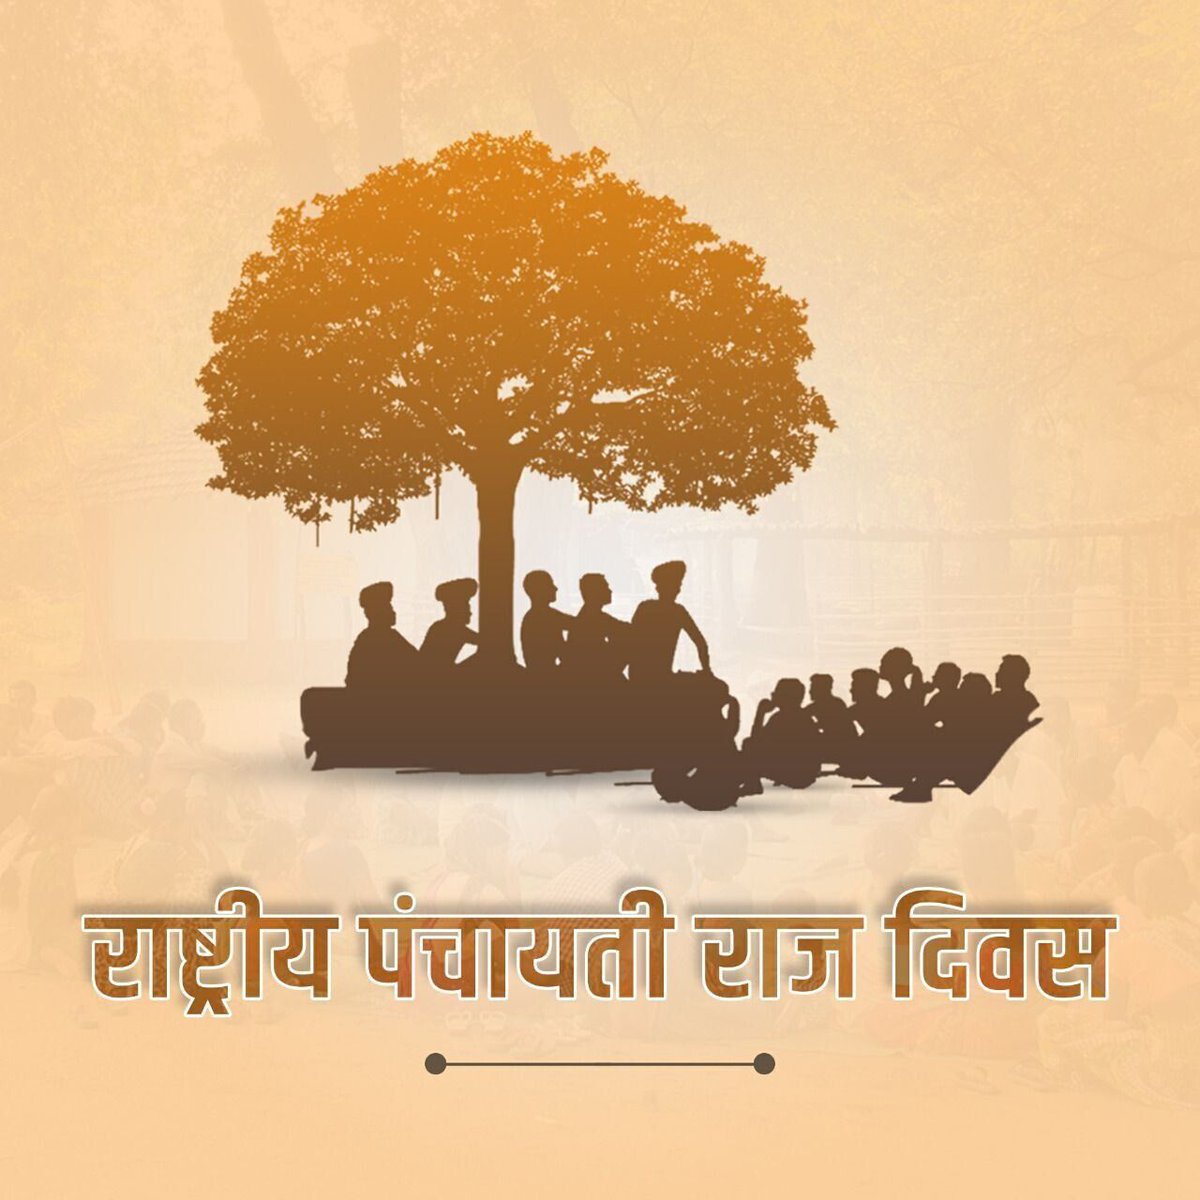 गांव गोद लेने वाले #Uttarakhand के सभी निवर्तमान सांसदों को राष्ट्रीय पंचायती राज दिवस पर हार्दिक शुभकामनाएं 💐